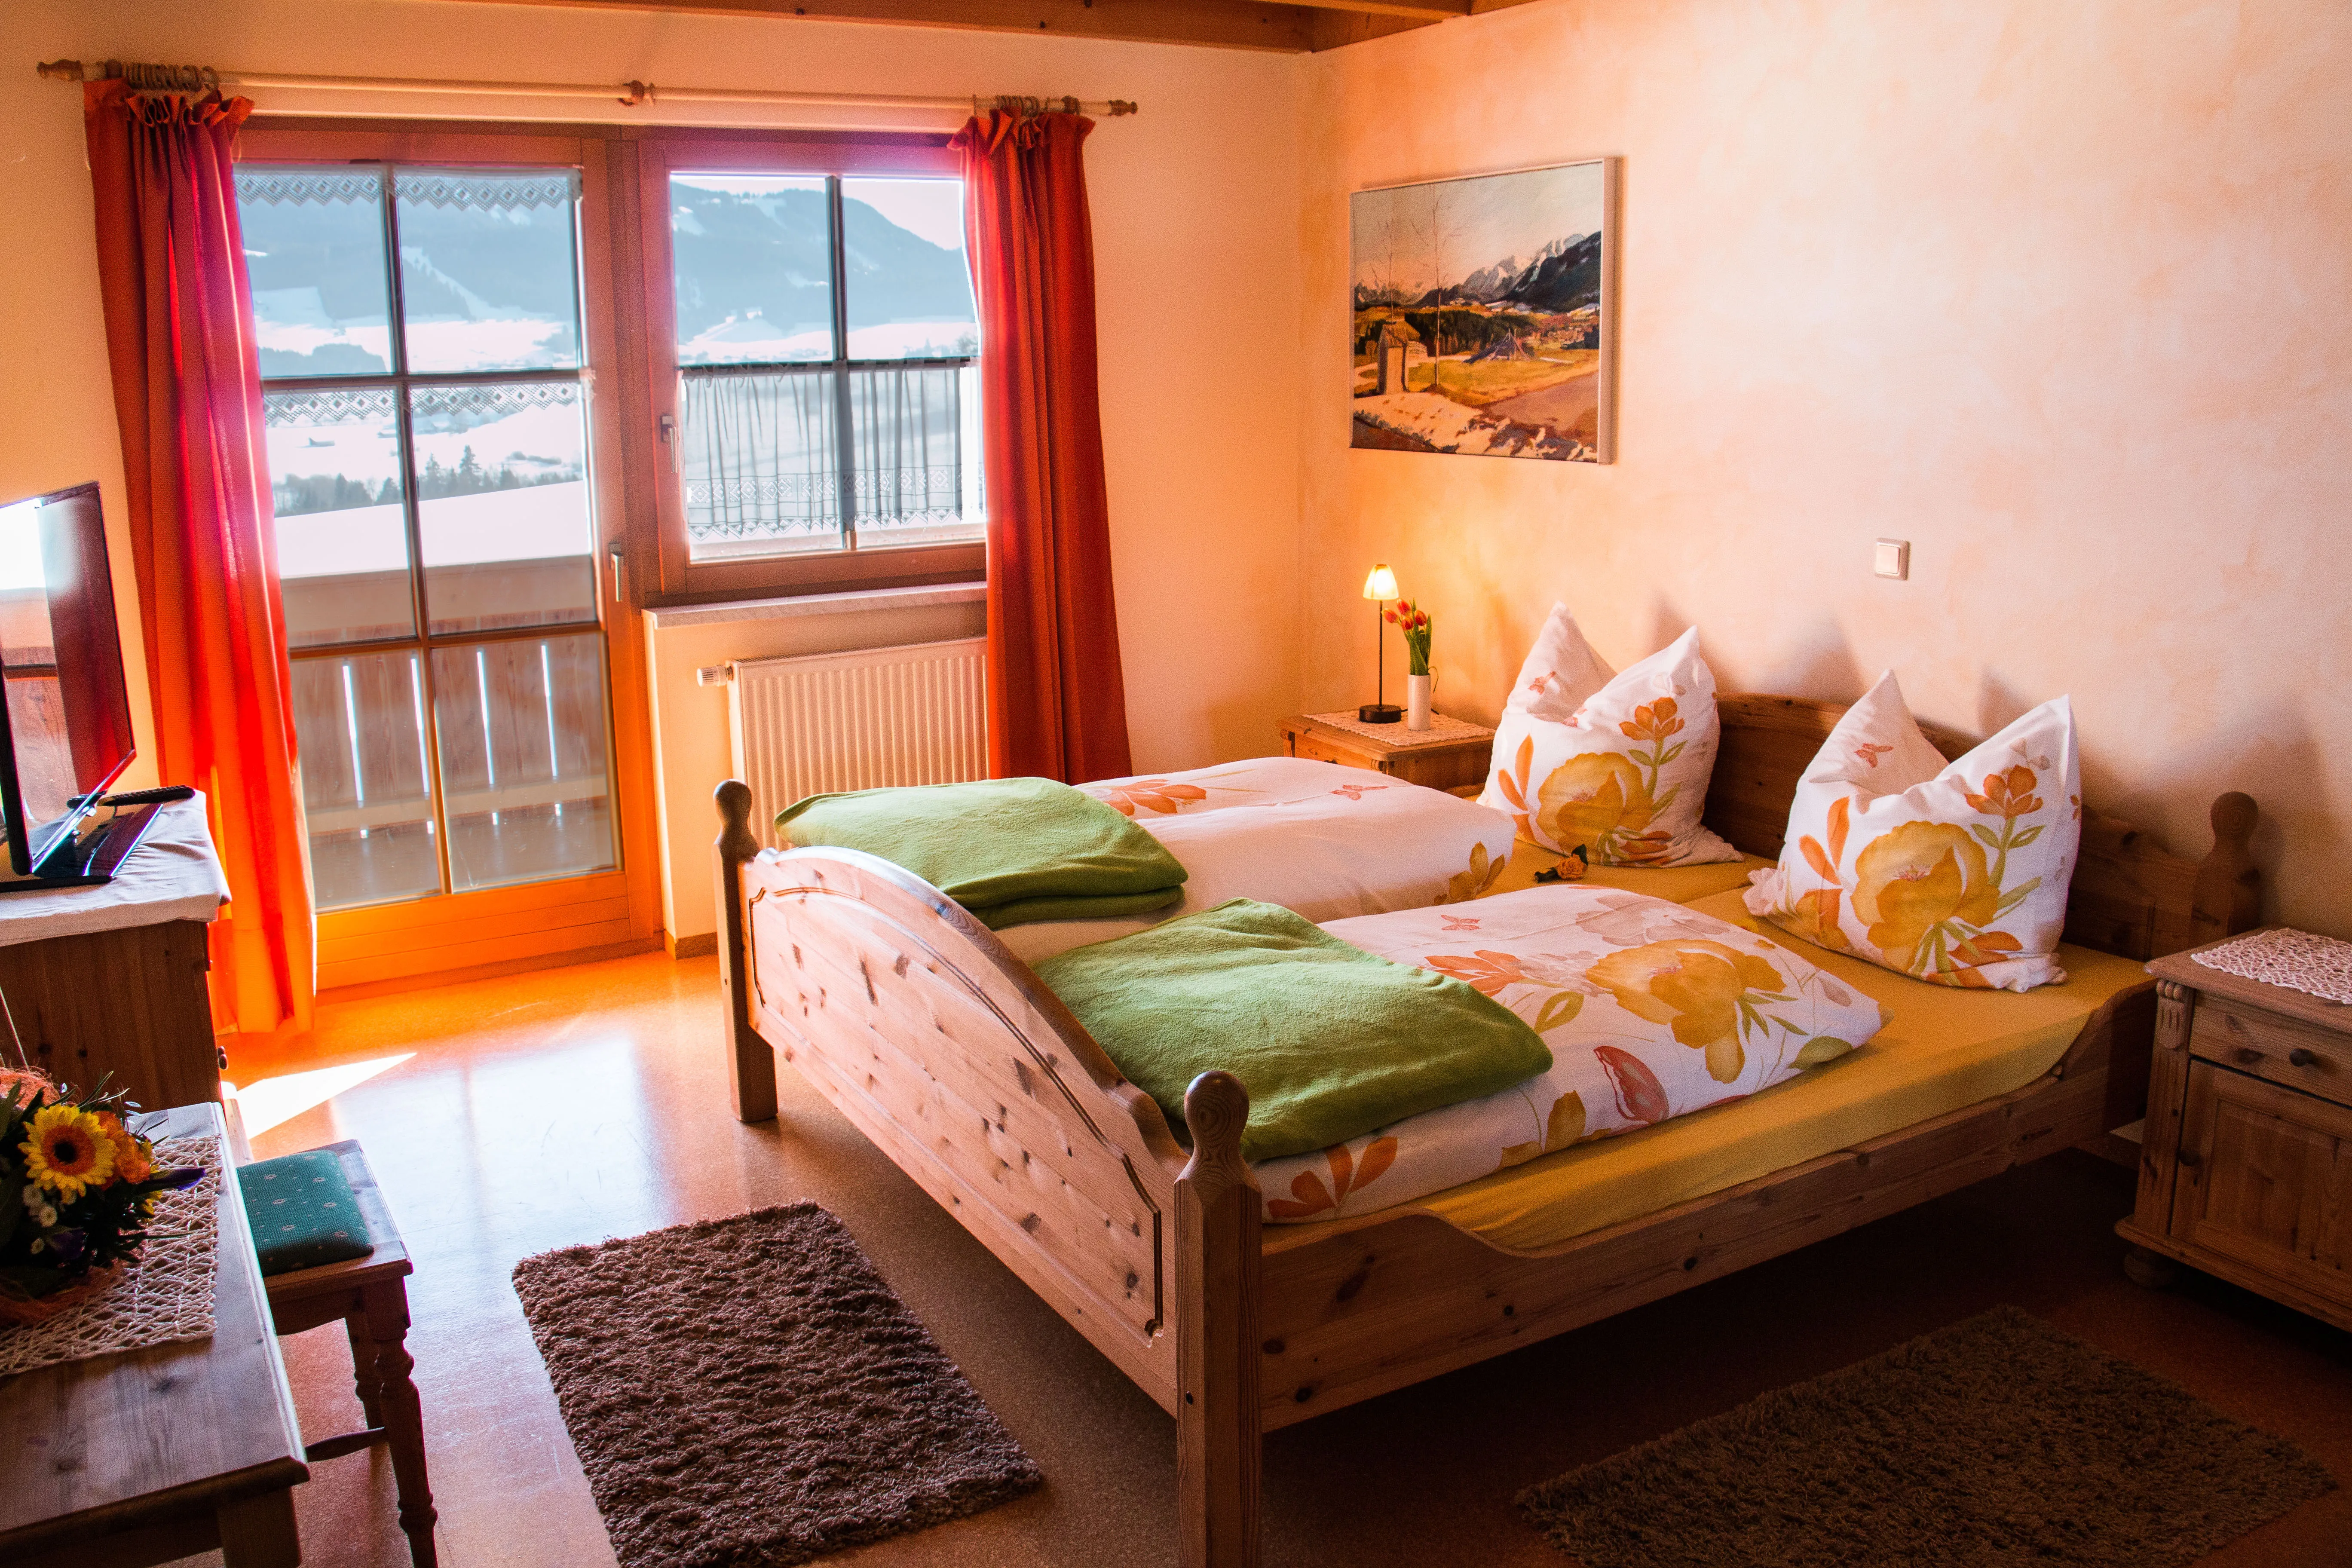 Innenaufnahme des Gasthofzimmers, welches in Rot und Orange schön geschmückt ist und grüne Decken auf den Betten hat.